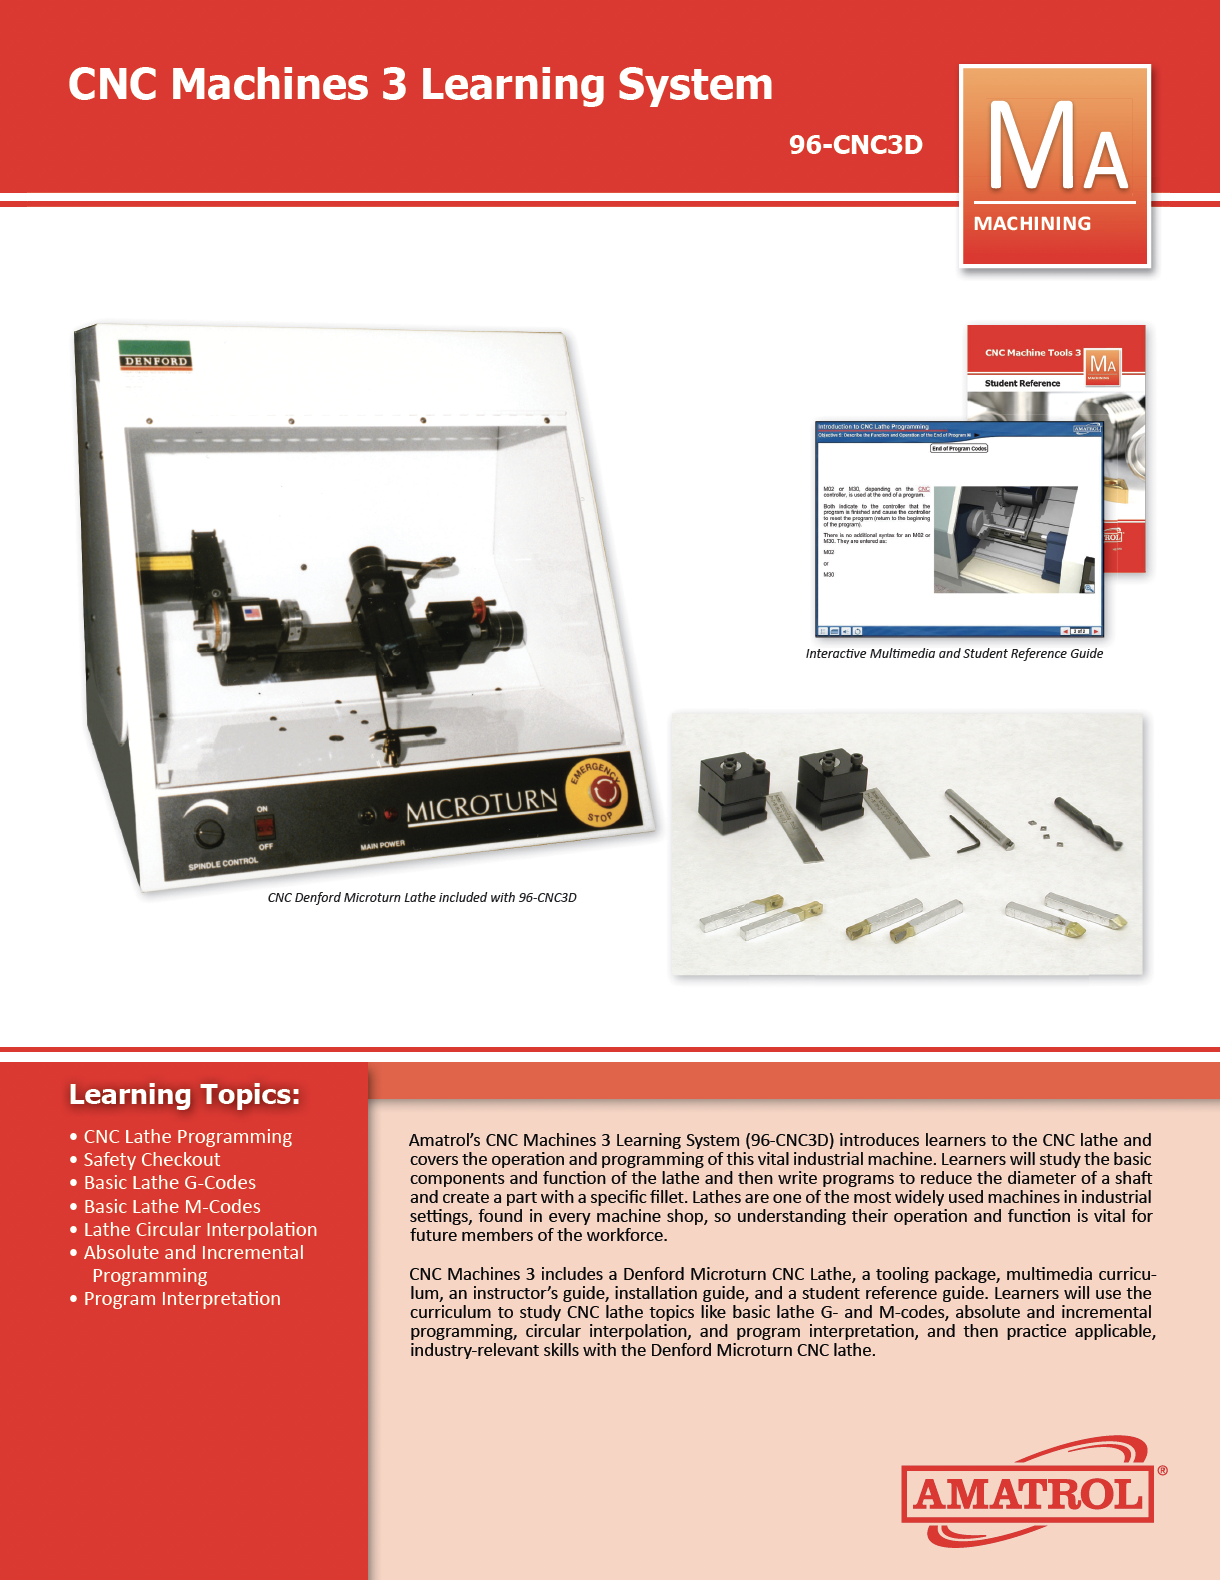 Amatrol CNC Machines Training 96-CNC3D